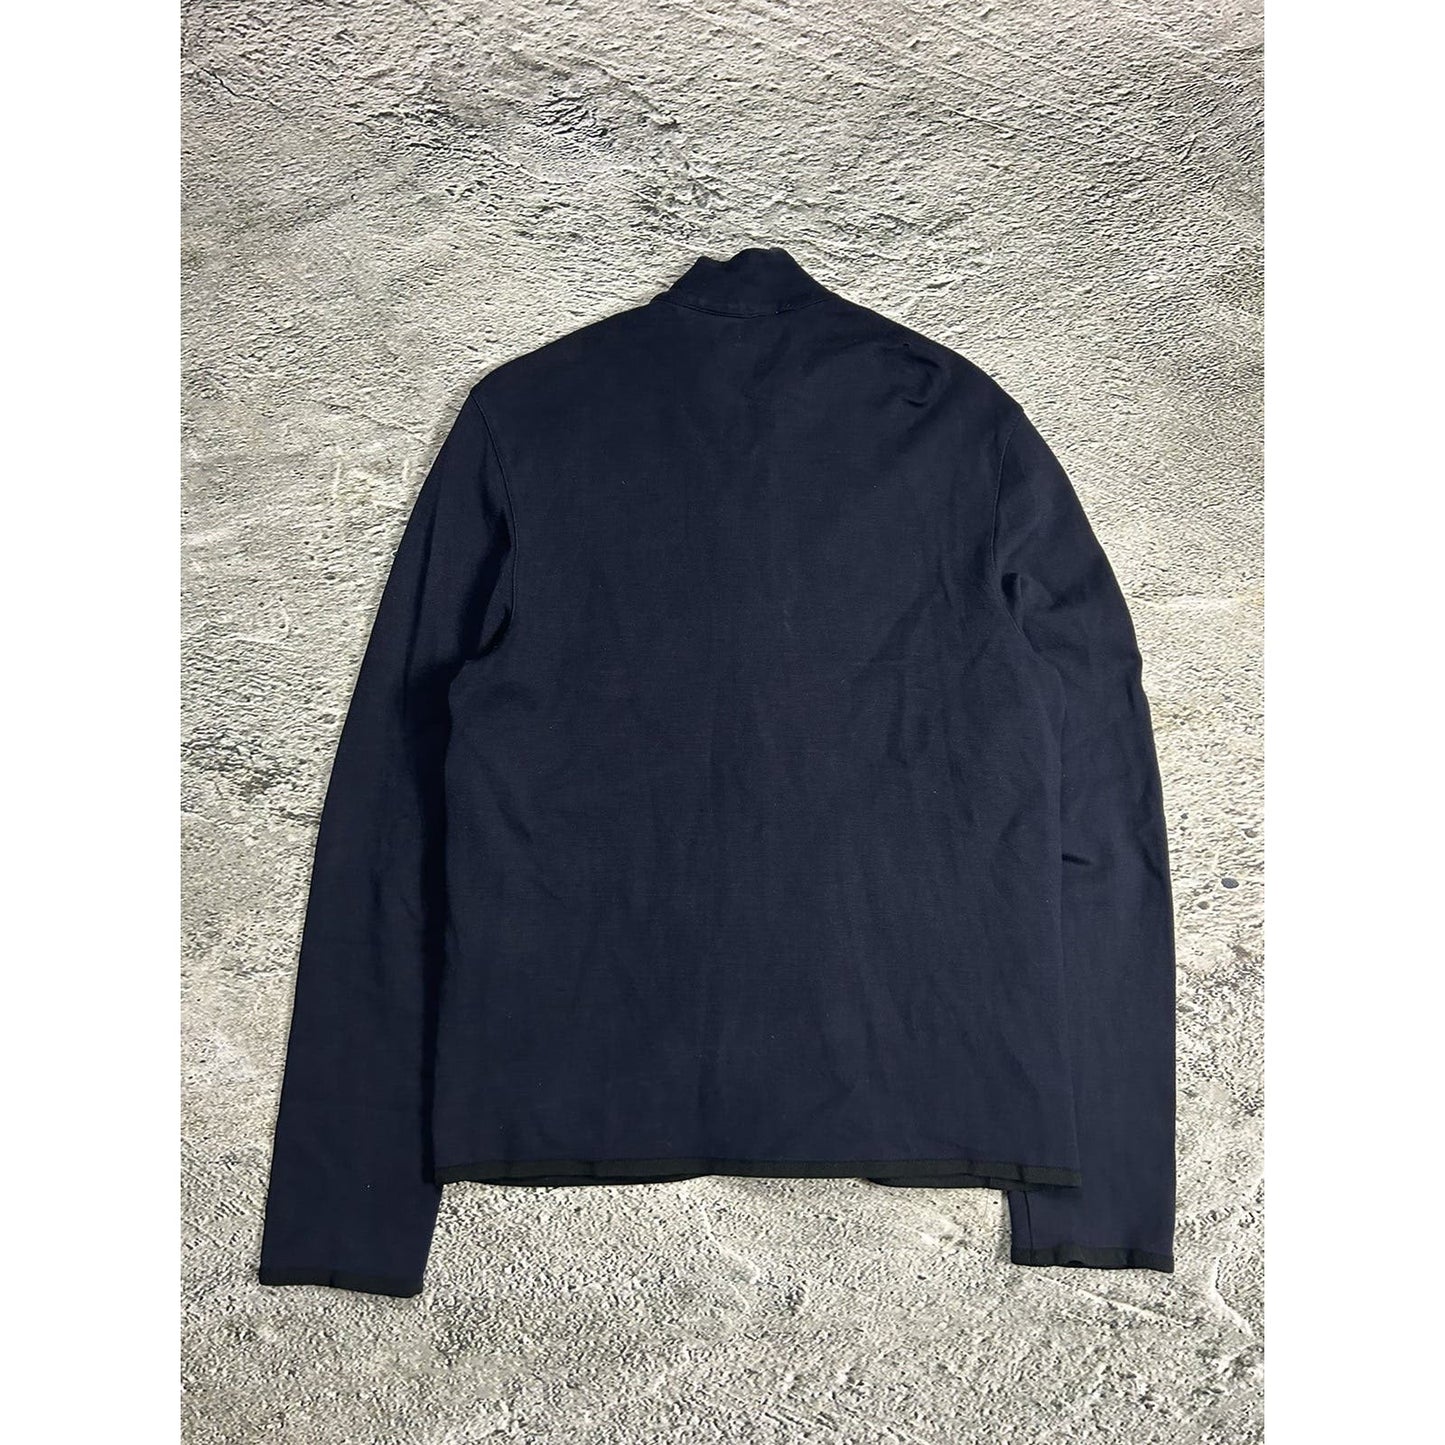 Prada zip sweatshirt tech fleece navy red tab vintage